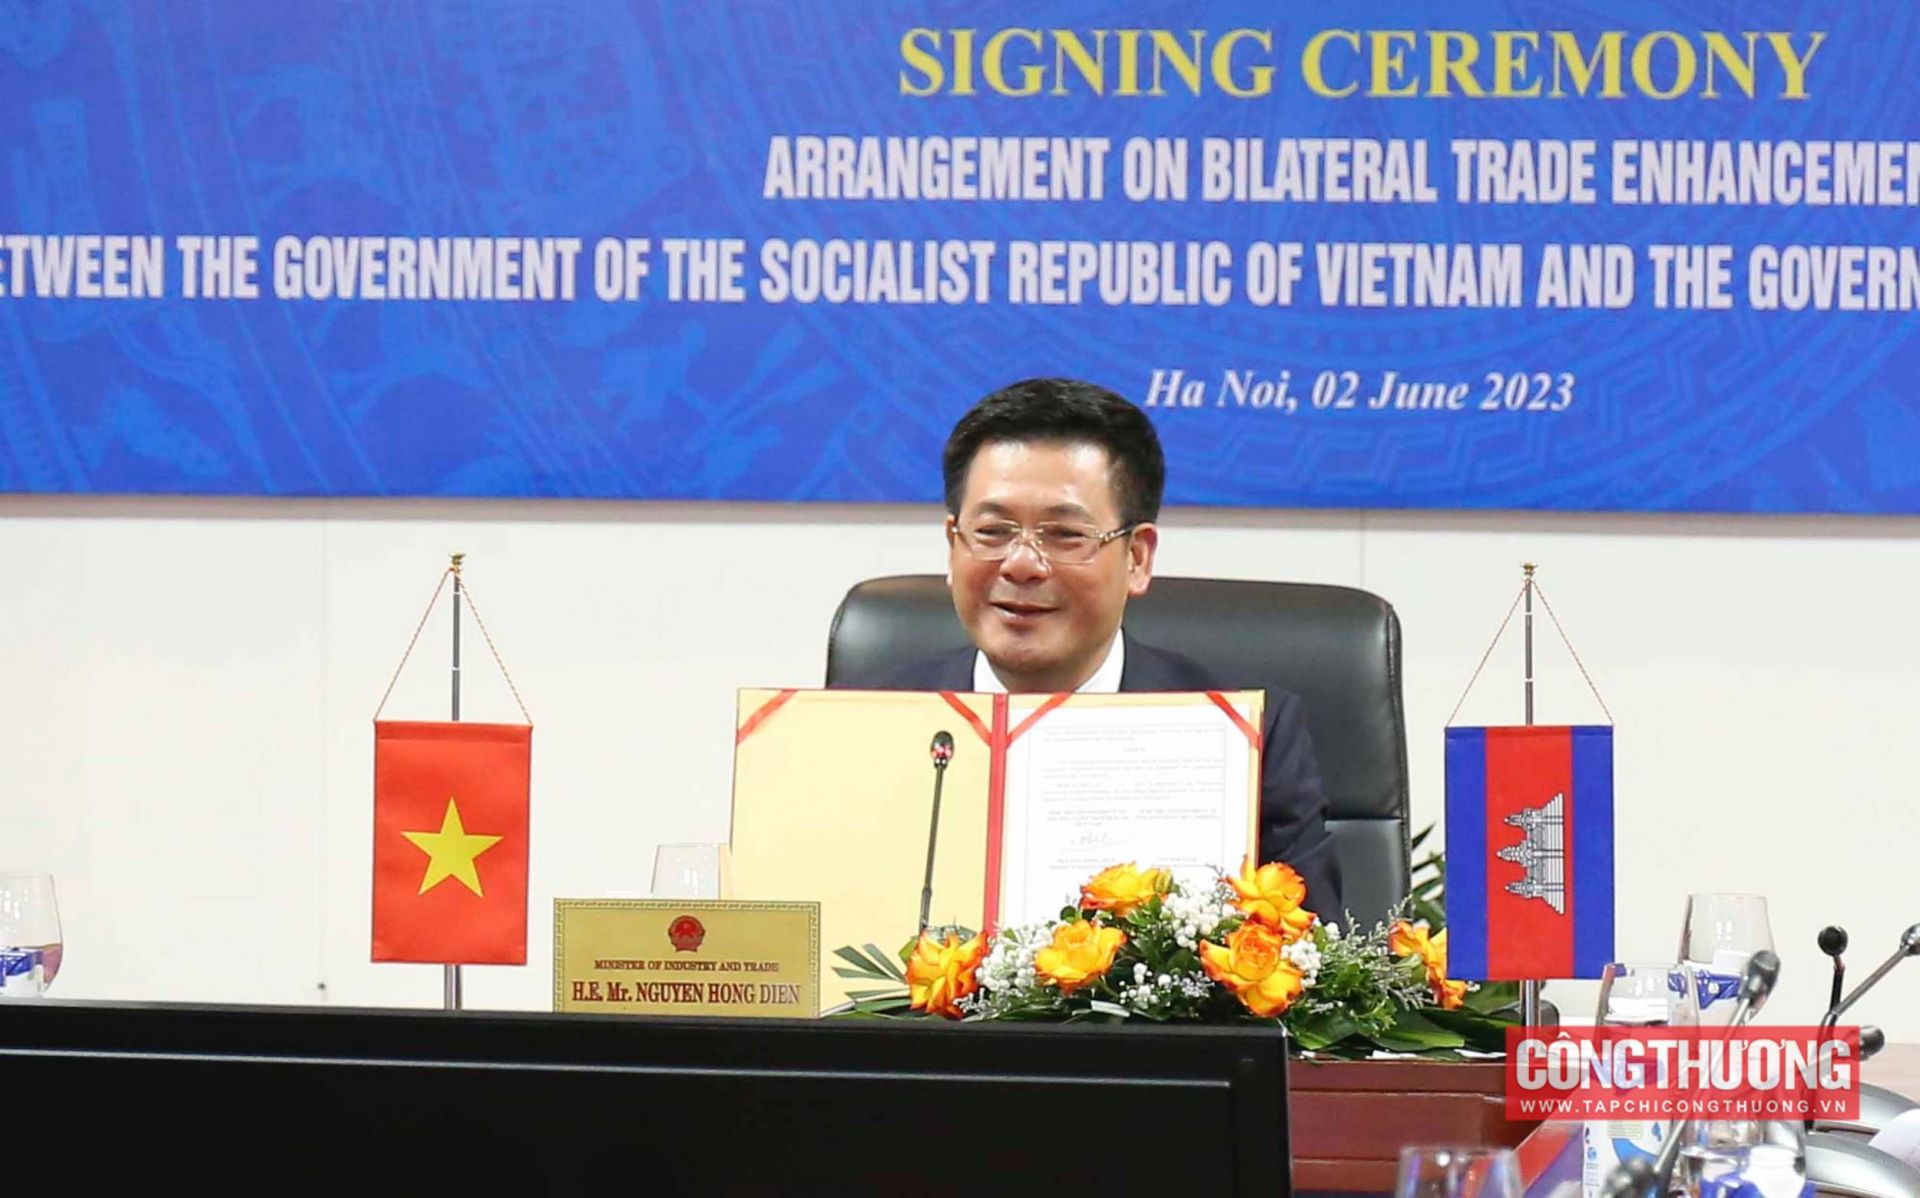 Việt Nam - Campuchia ký Bản Thoả thuận thúc đẩy thương mại song phương